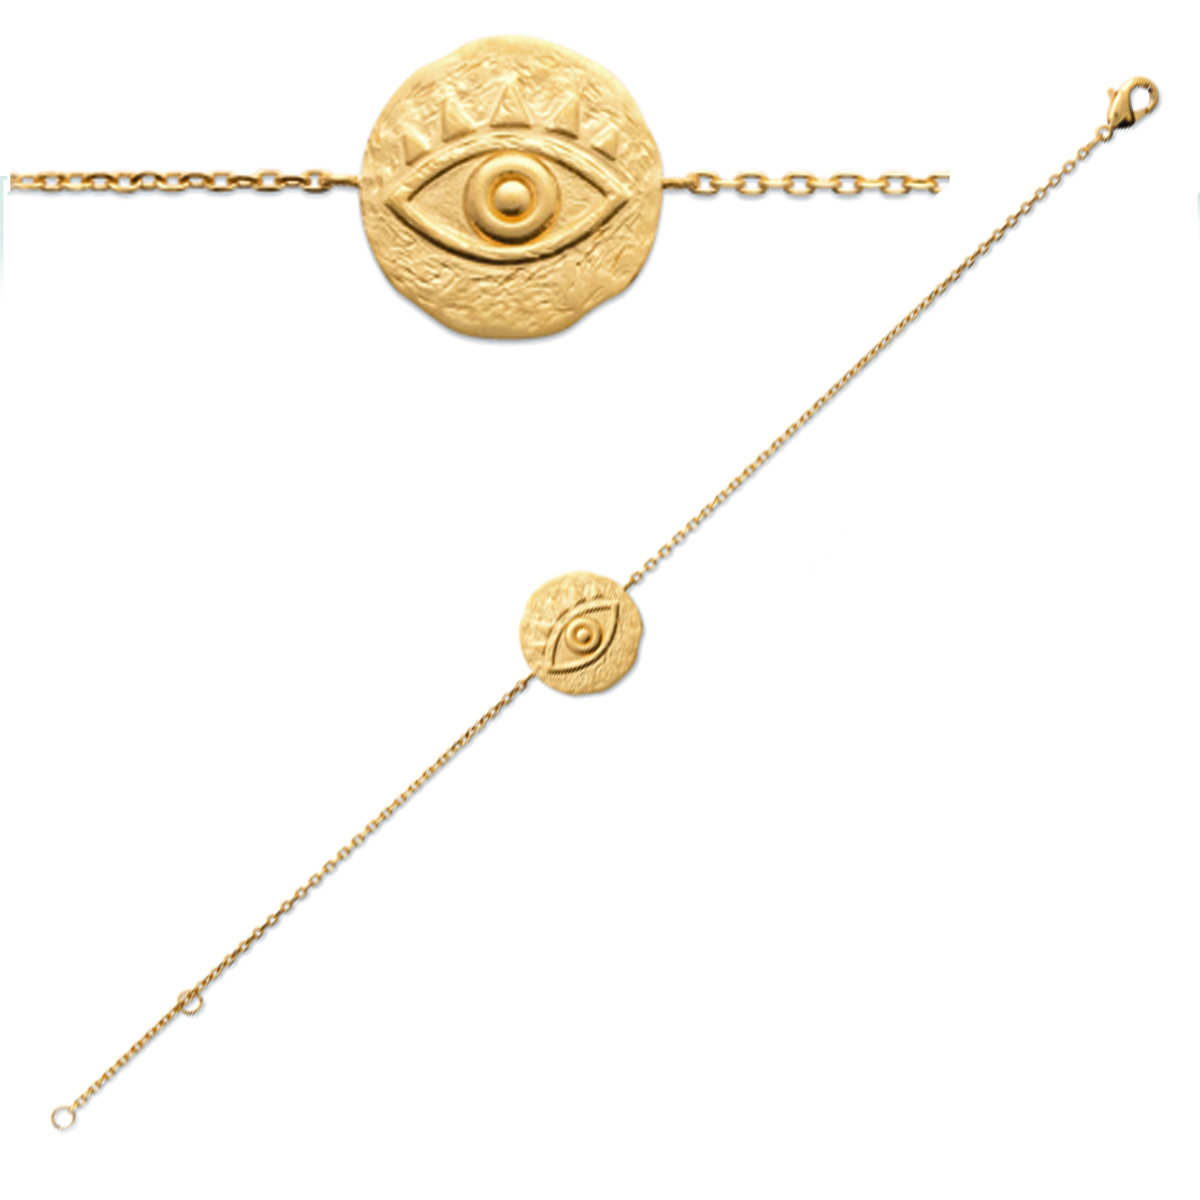 Bracelet Plaqué Or \'Cléopatra\' doré mat - 18 cm 15 mm (oeil) - [Q6298]